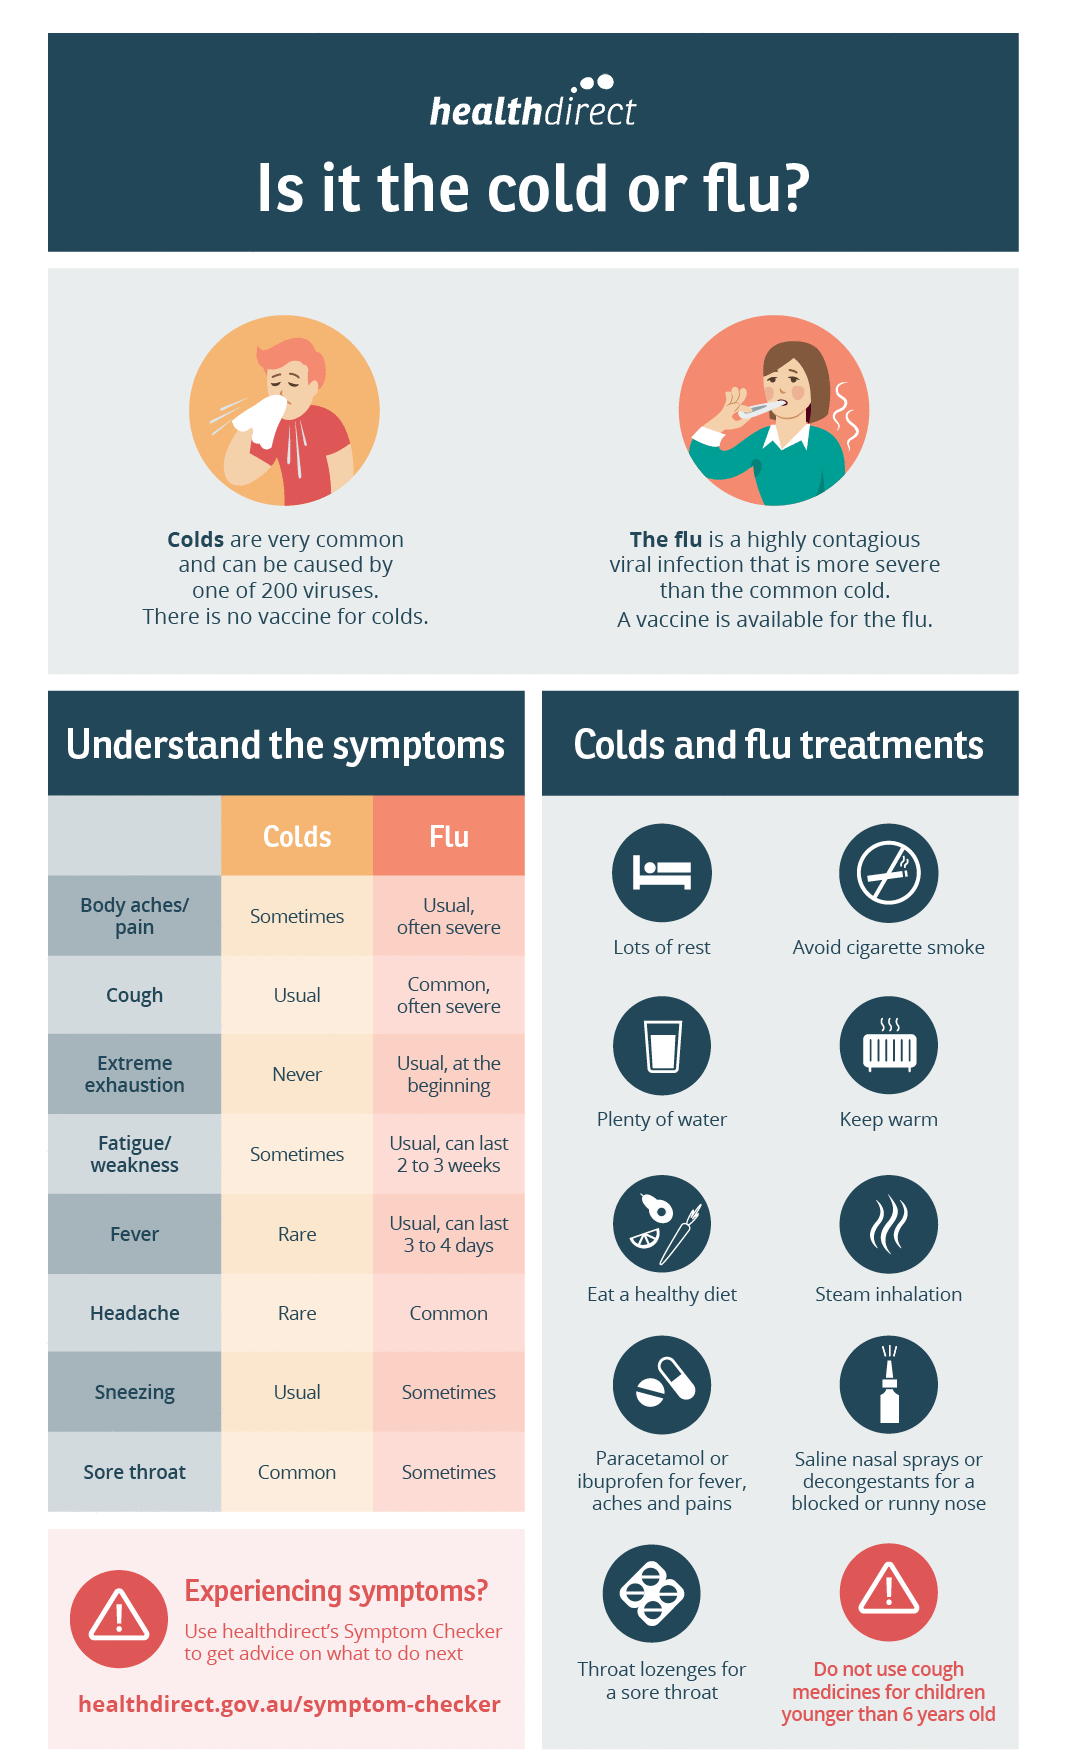 Überblick über die Symptome von Husten und Erkältung. Behandlungsmöglichkeiten für Husten und Erkältung